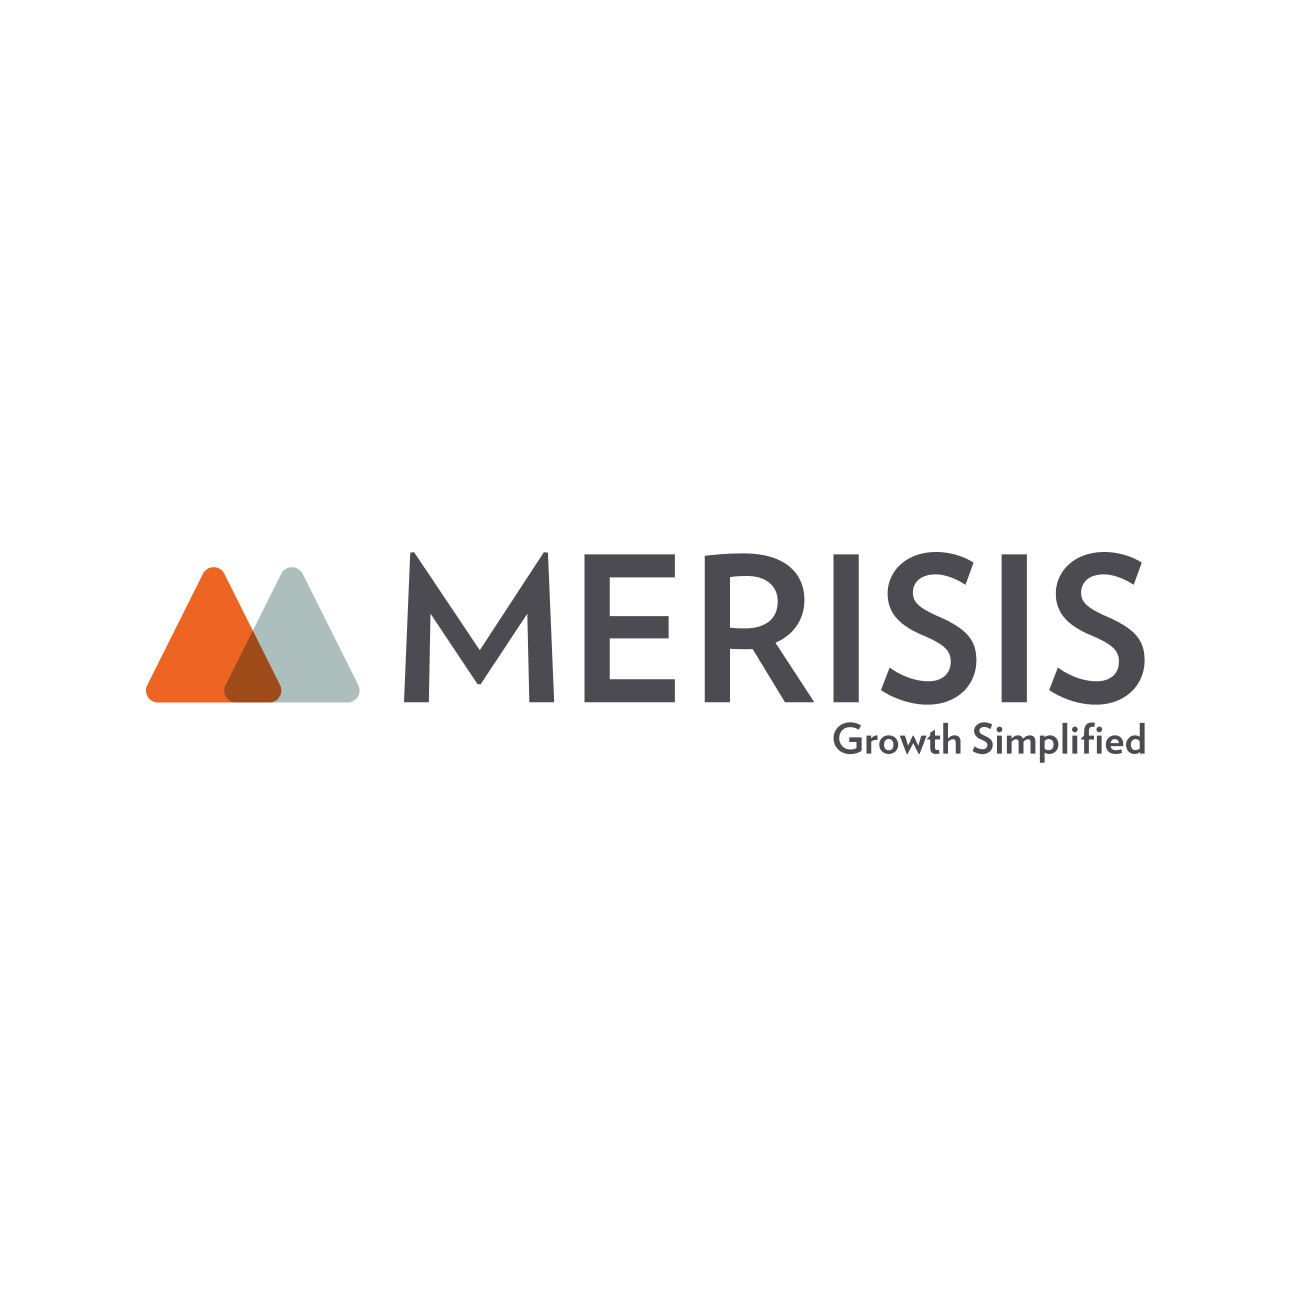 Merisis - White Circular-1